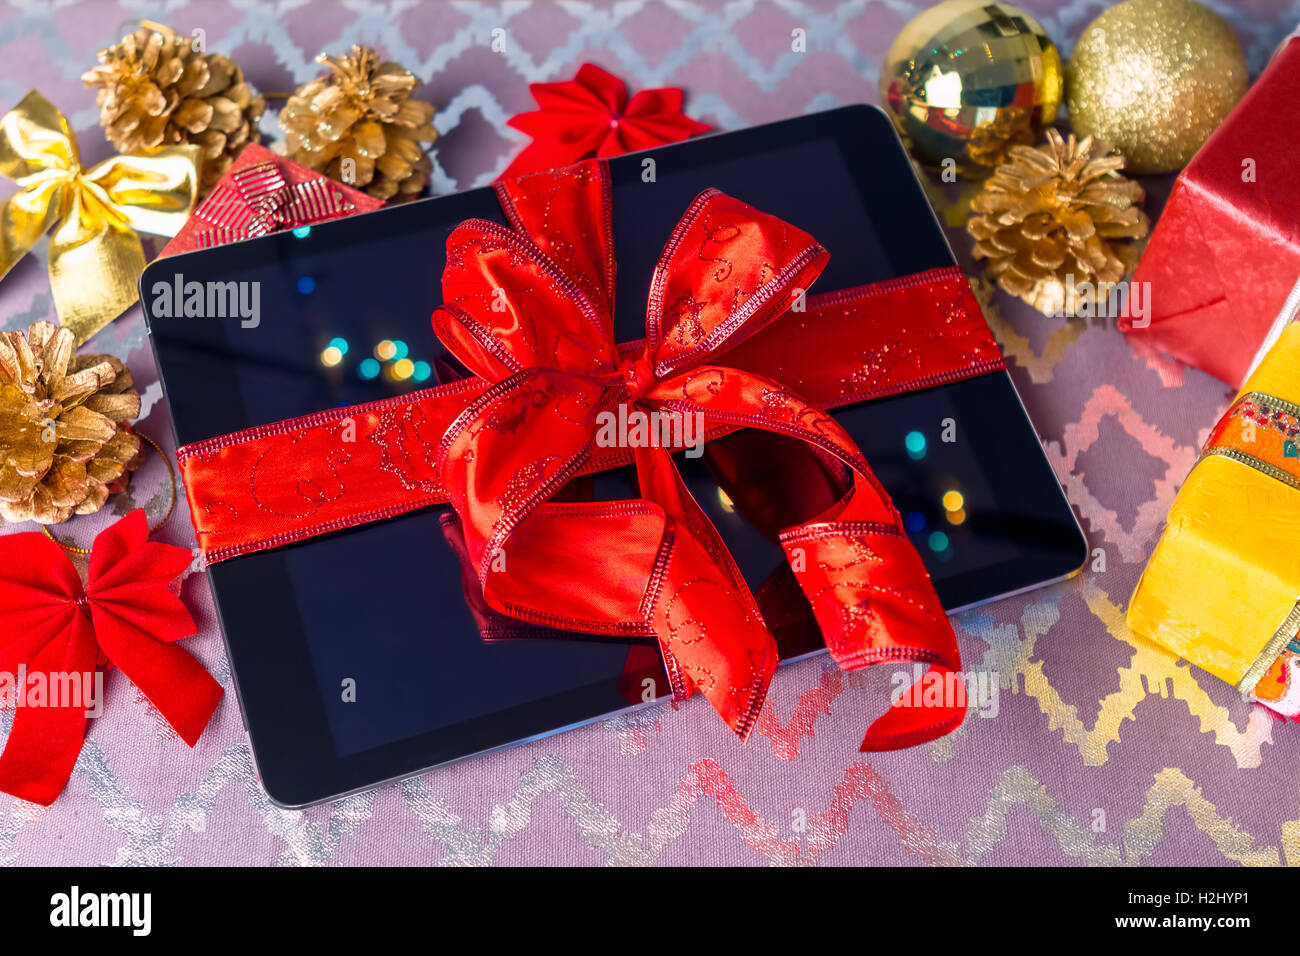 Tablet-pc zu Weihnachten mit Geschenken, Dekorationen auf Tisch. Stockfoto